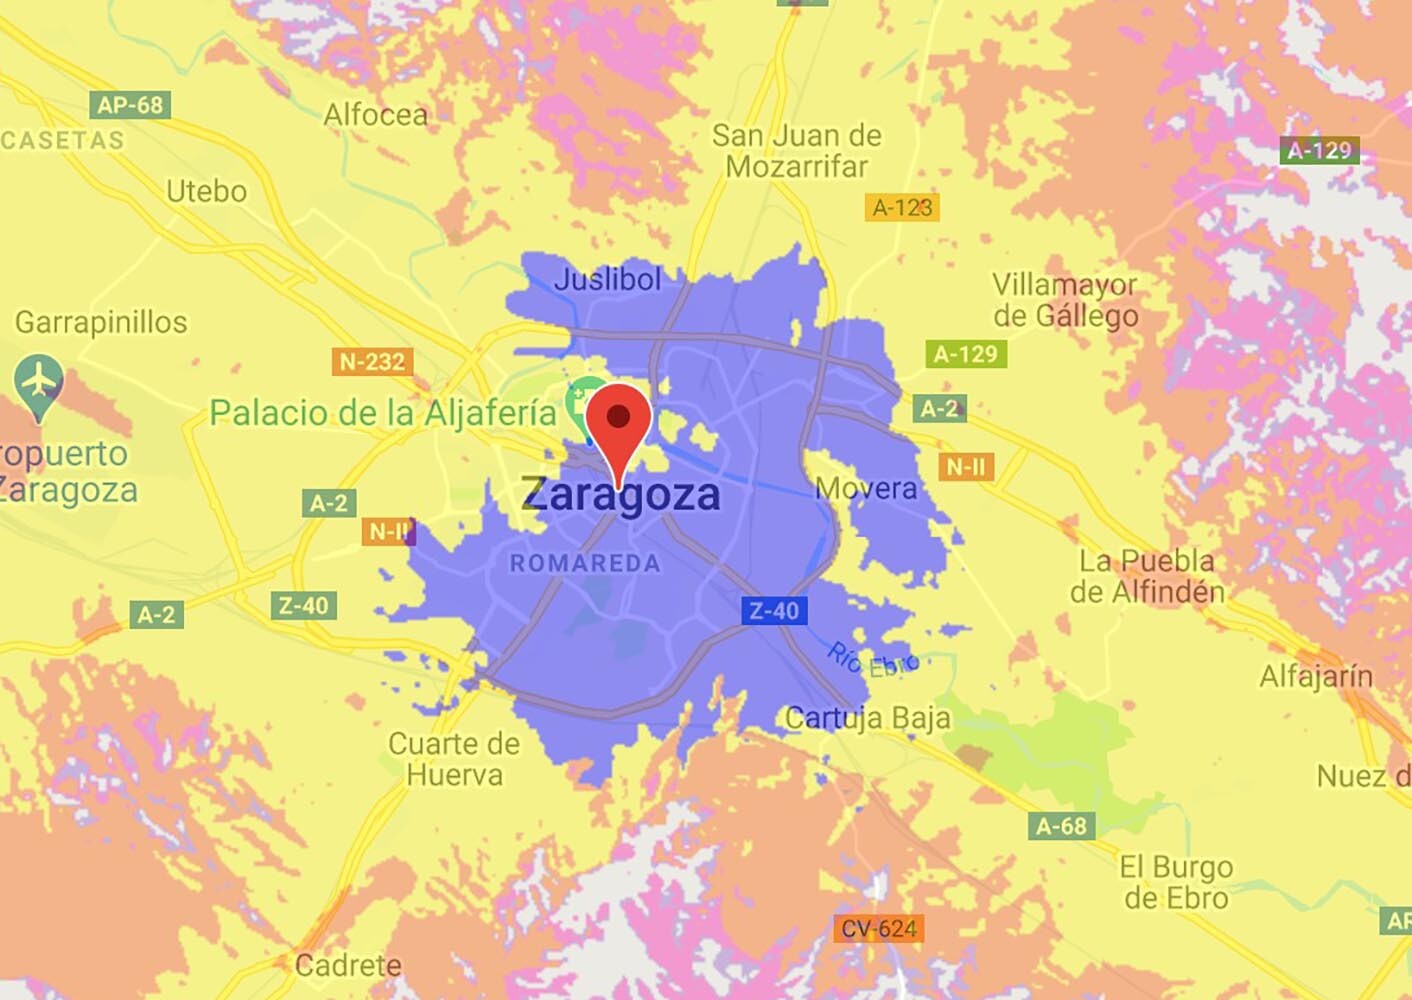 Cobertura 5G de Orange en Zaragoza